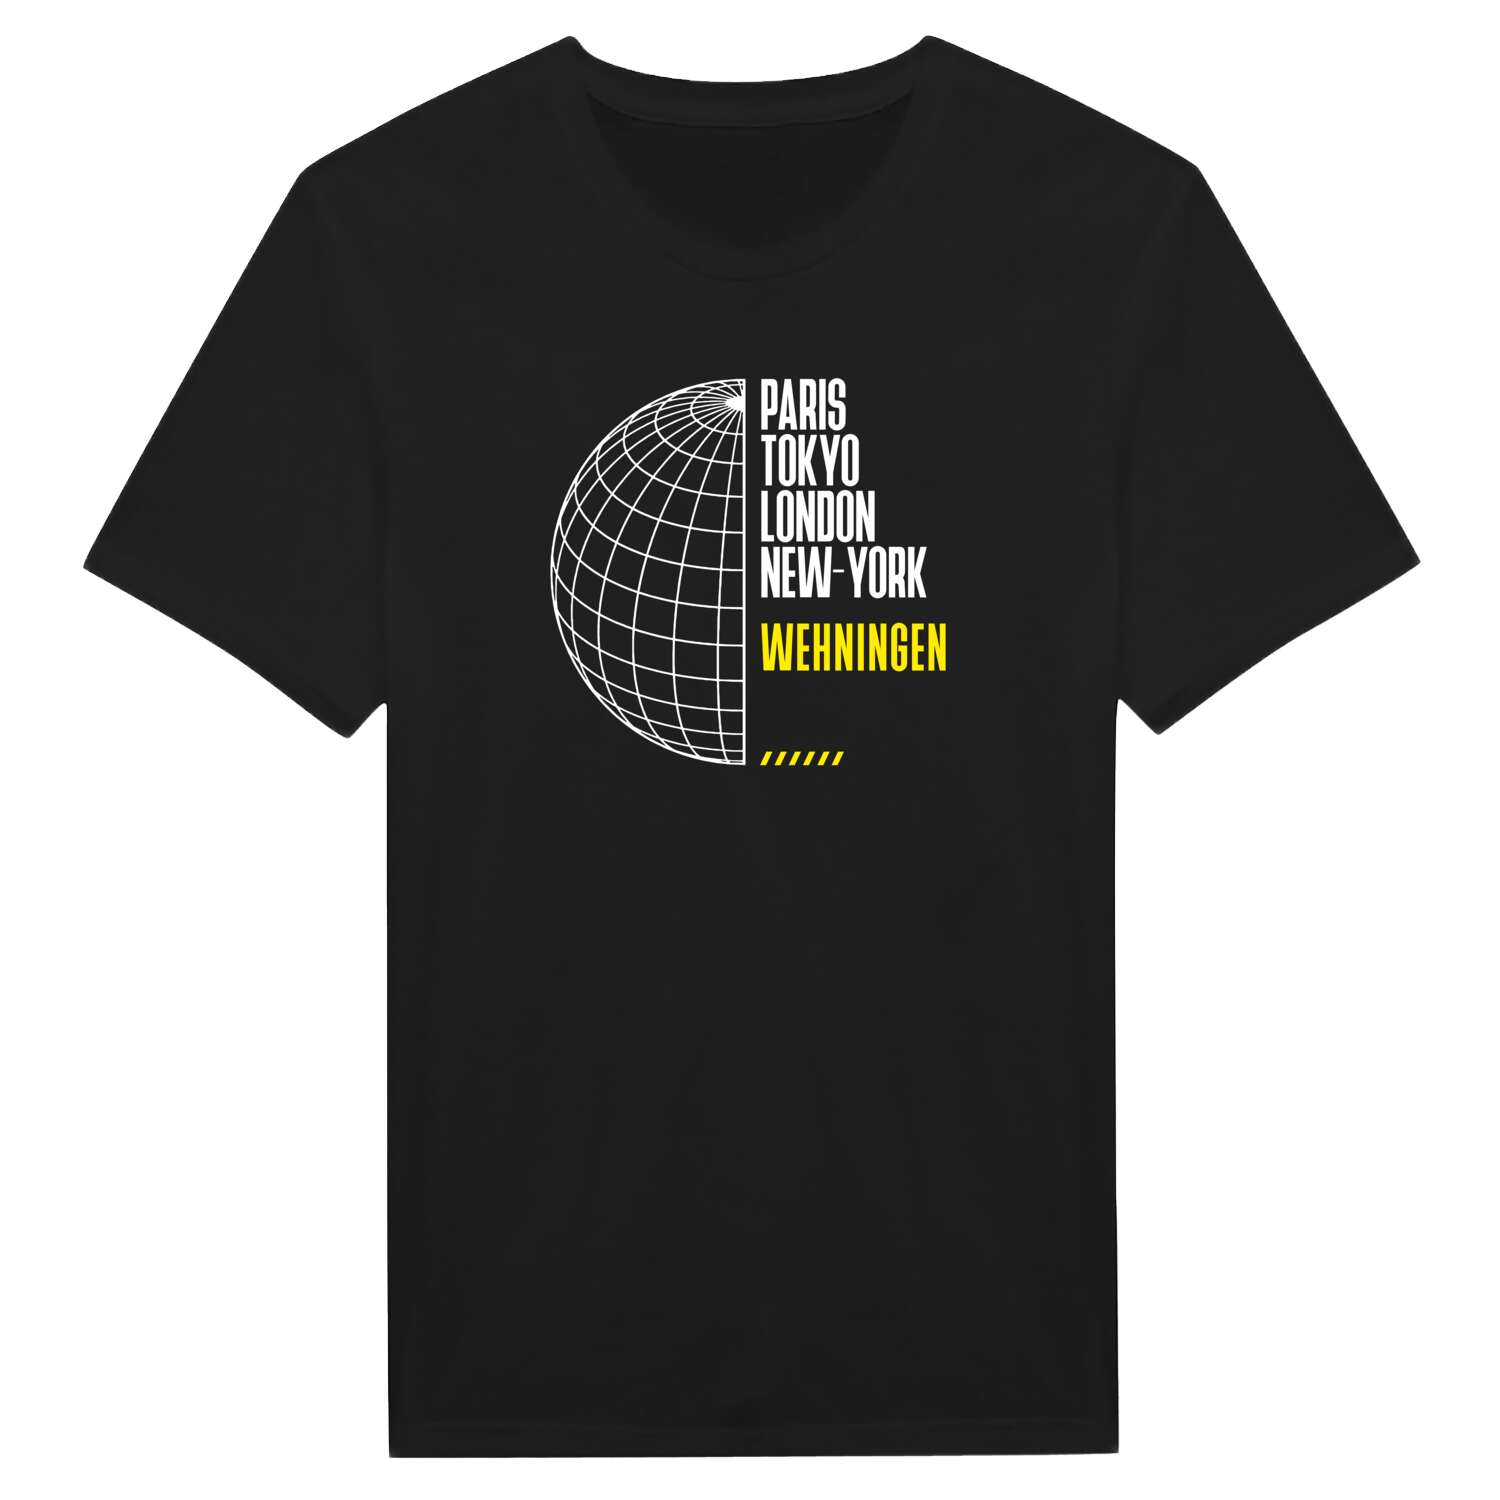 Wehningen T-Shirt »Paris Tokyo London«